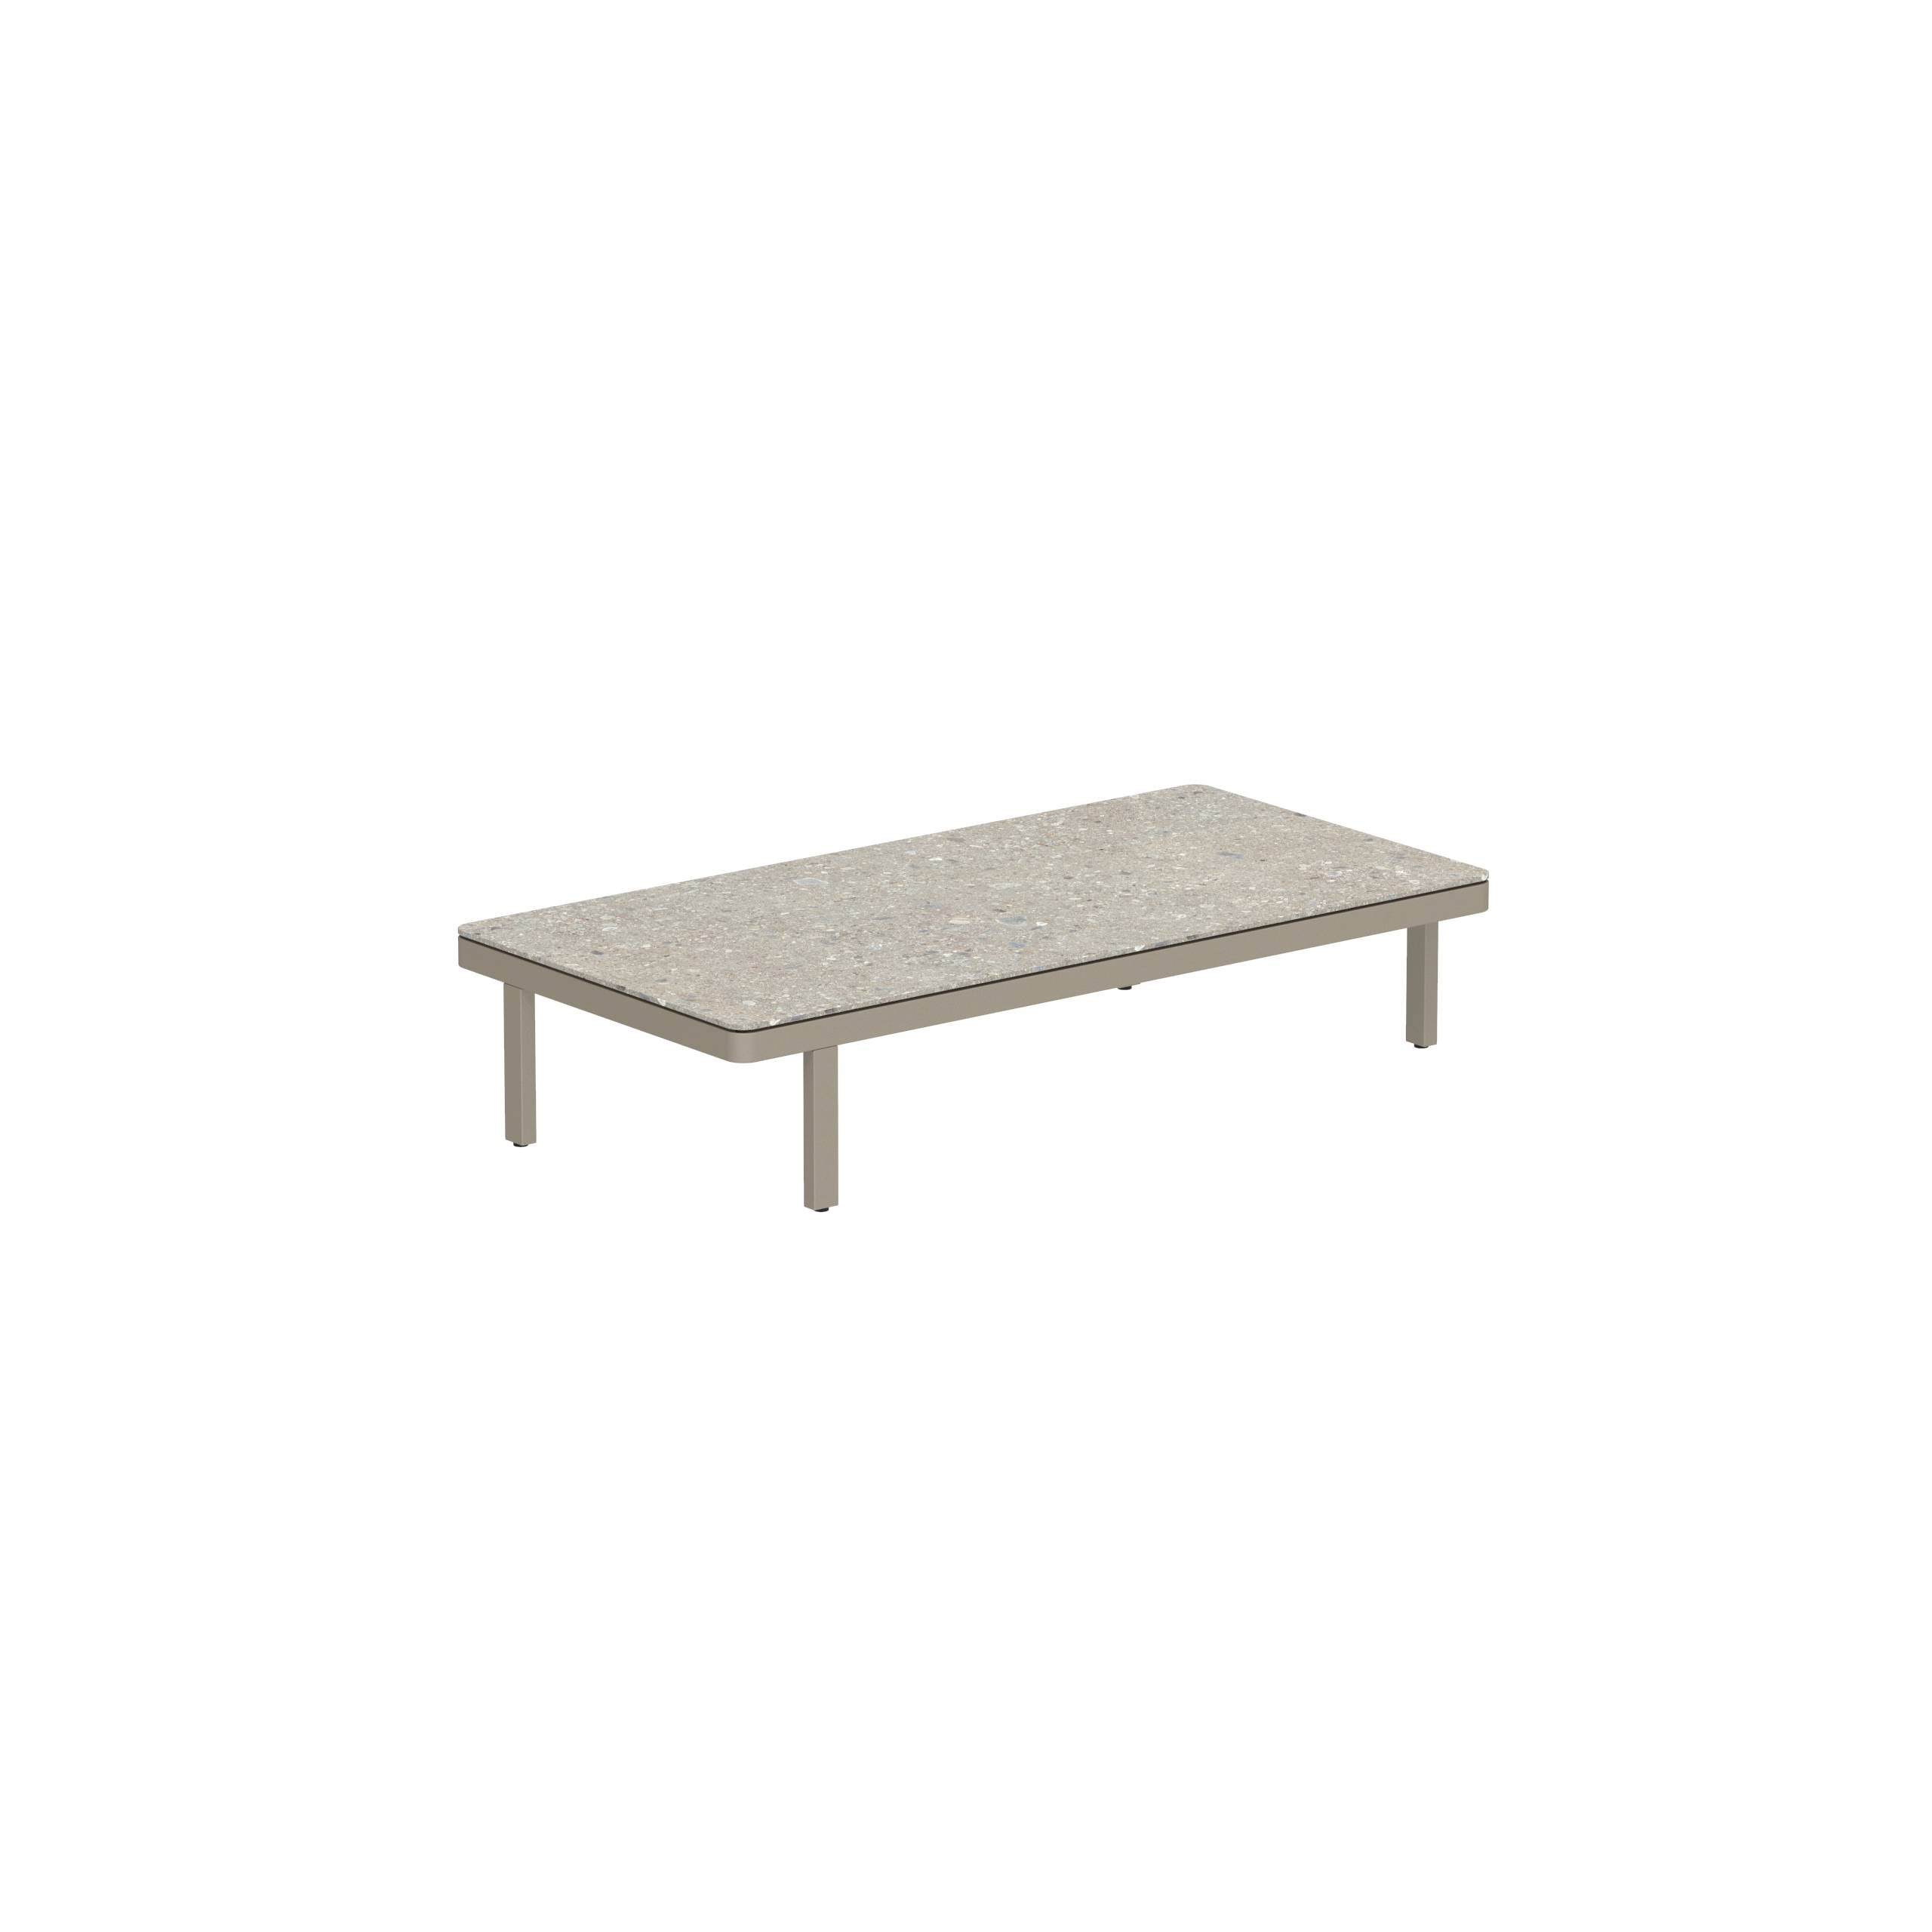 Alura Lounge 160 Lth Table 160x80x34cm Sand Ceramic Tabletop Ceppo Dolomitica